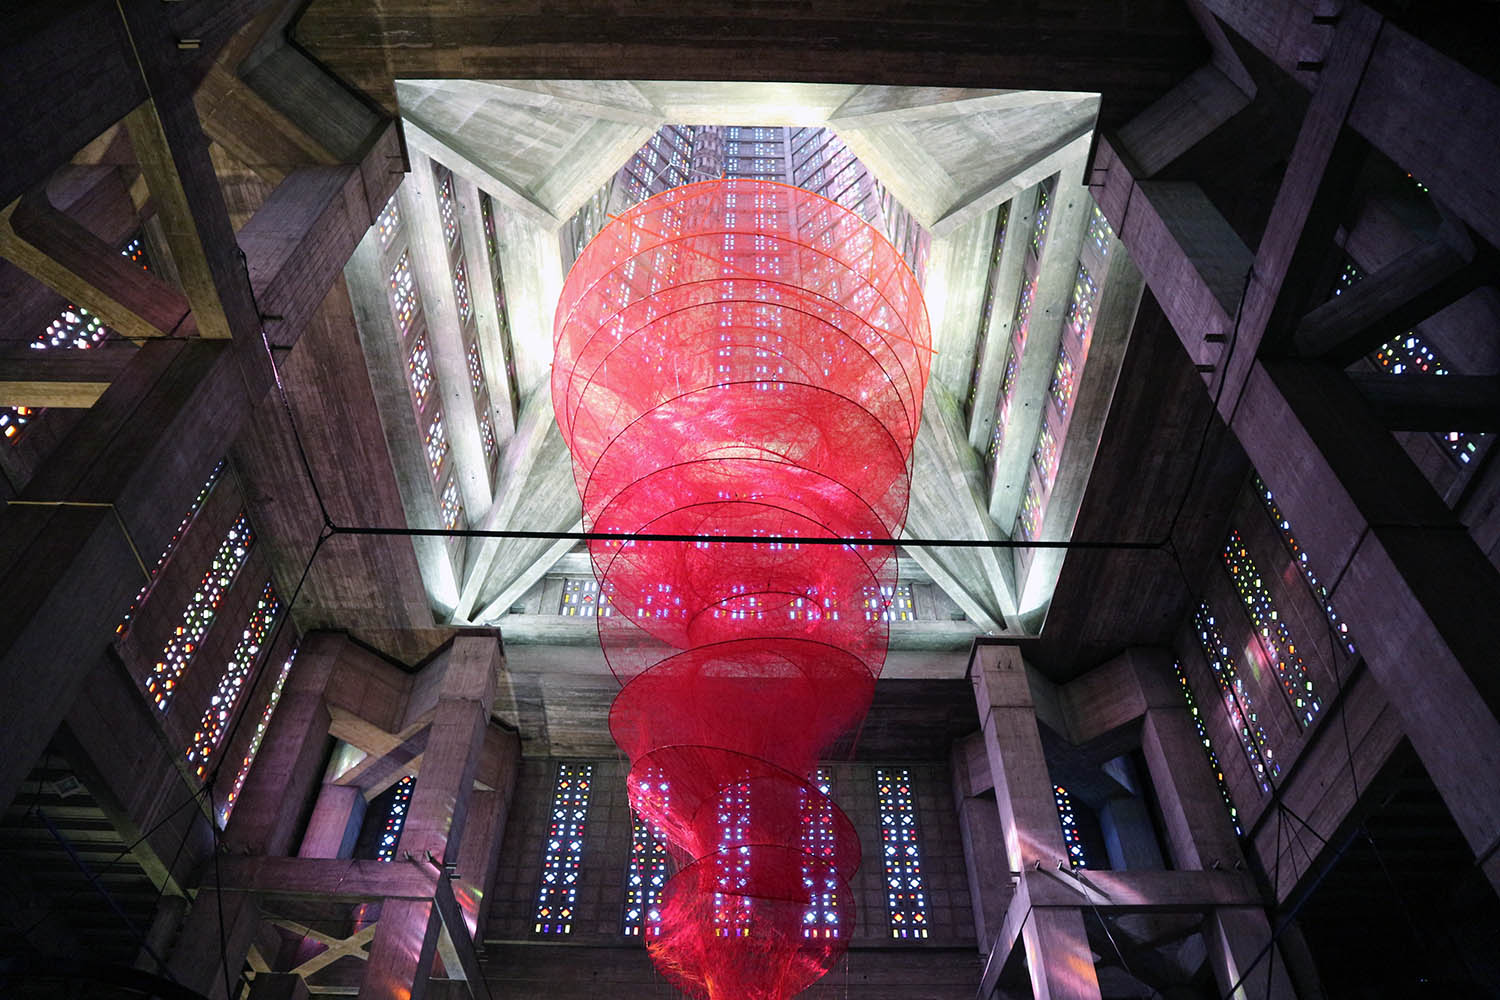 Parcours La Ville Perret. In Perrets Église Saint-Joseph hängt "Accumulation of Power" der japanischen Künstlerin Chiharu Shiota.